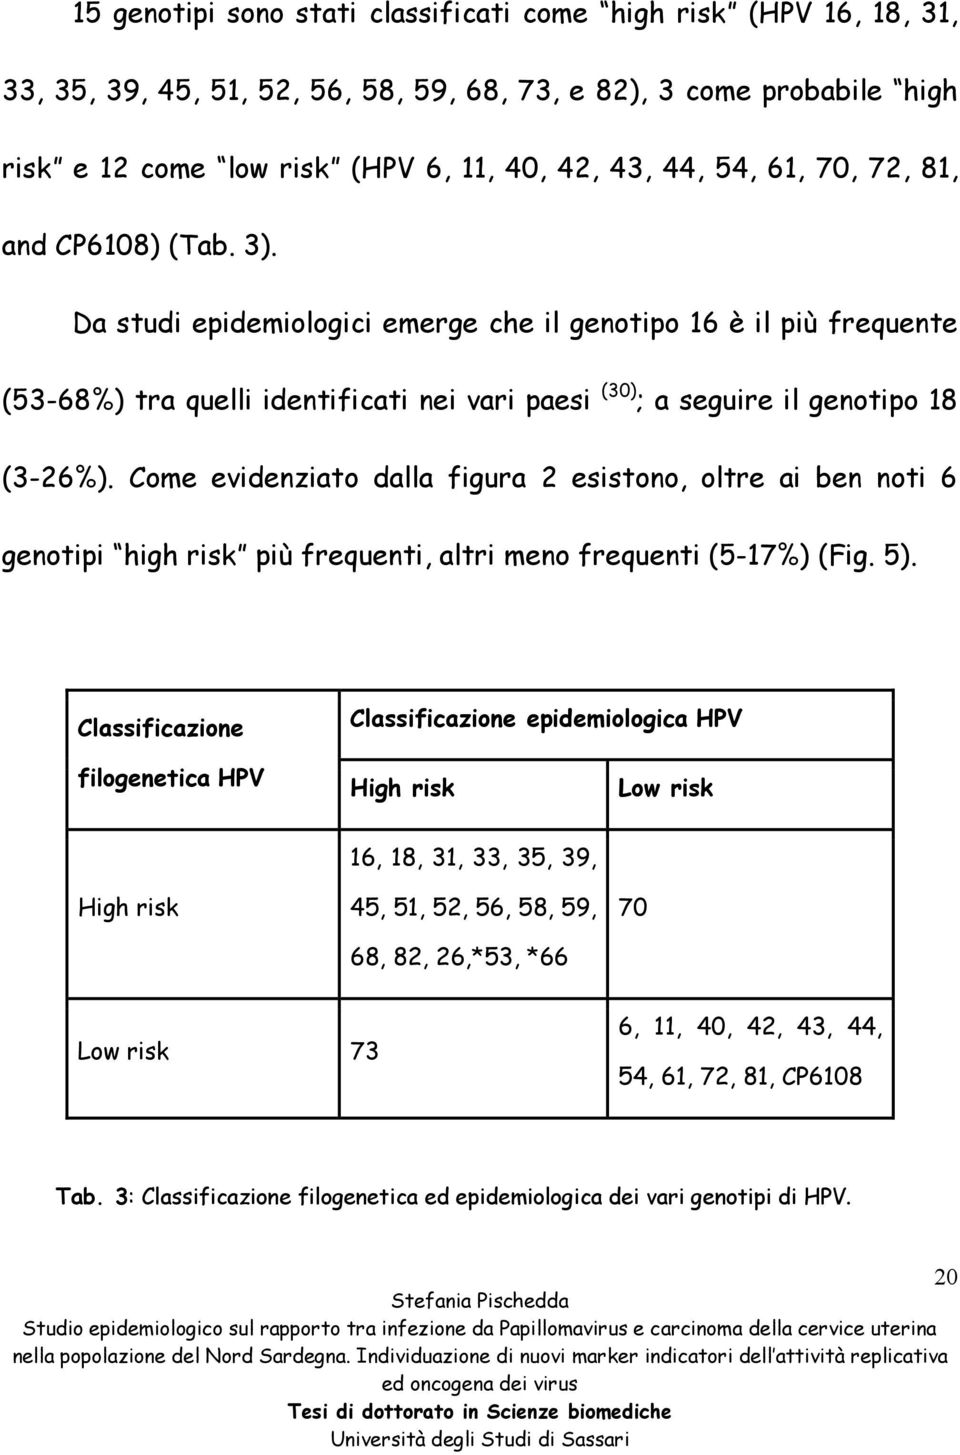 Come evidenziato dalla figura 2 esistono, oltre ai ben noti 6 genotipi high risk più frequenti, altri meno frequenti (5-17%) (Fig. 5).